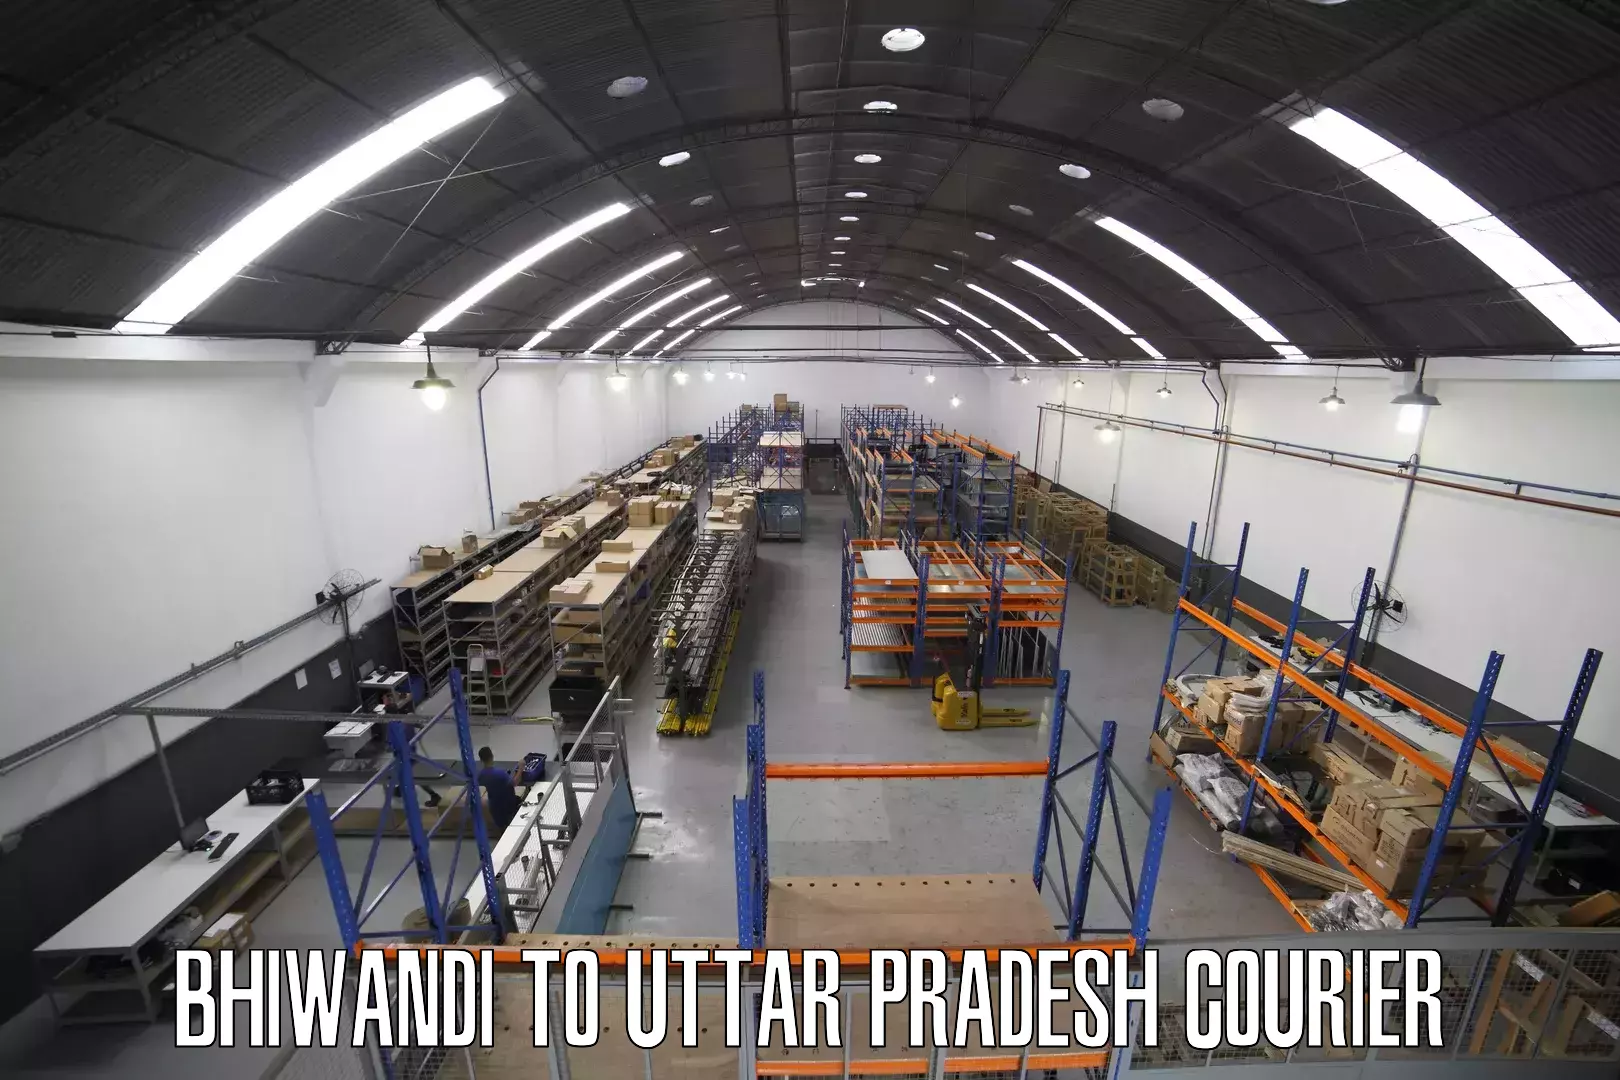 24-hour courier service Bhiwandi to Uttar Pradesh